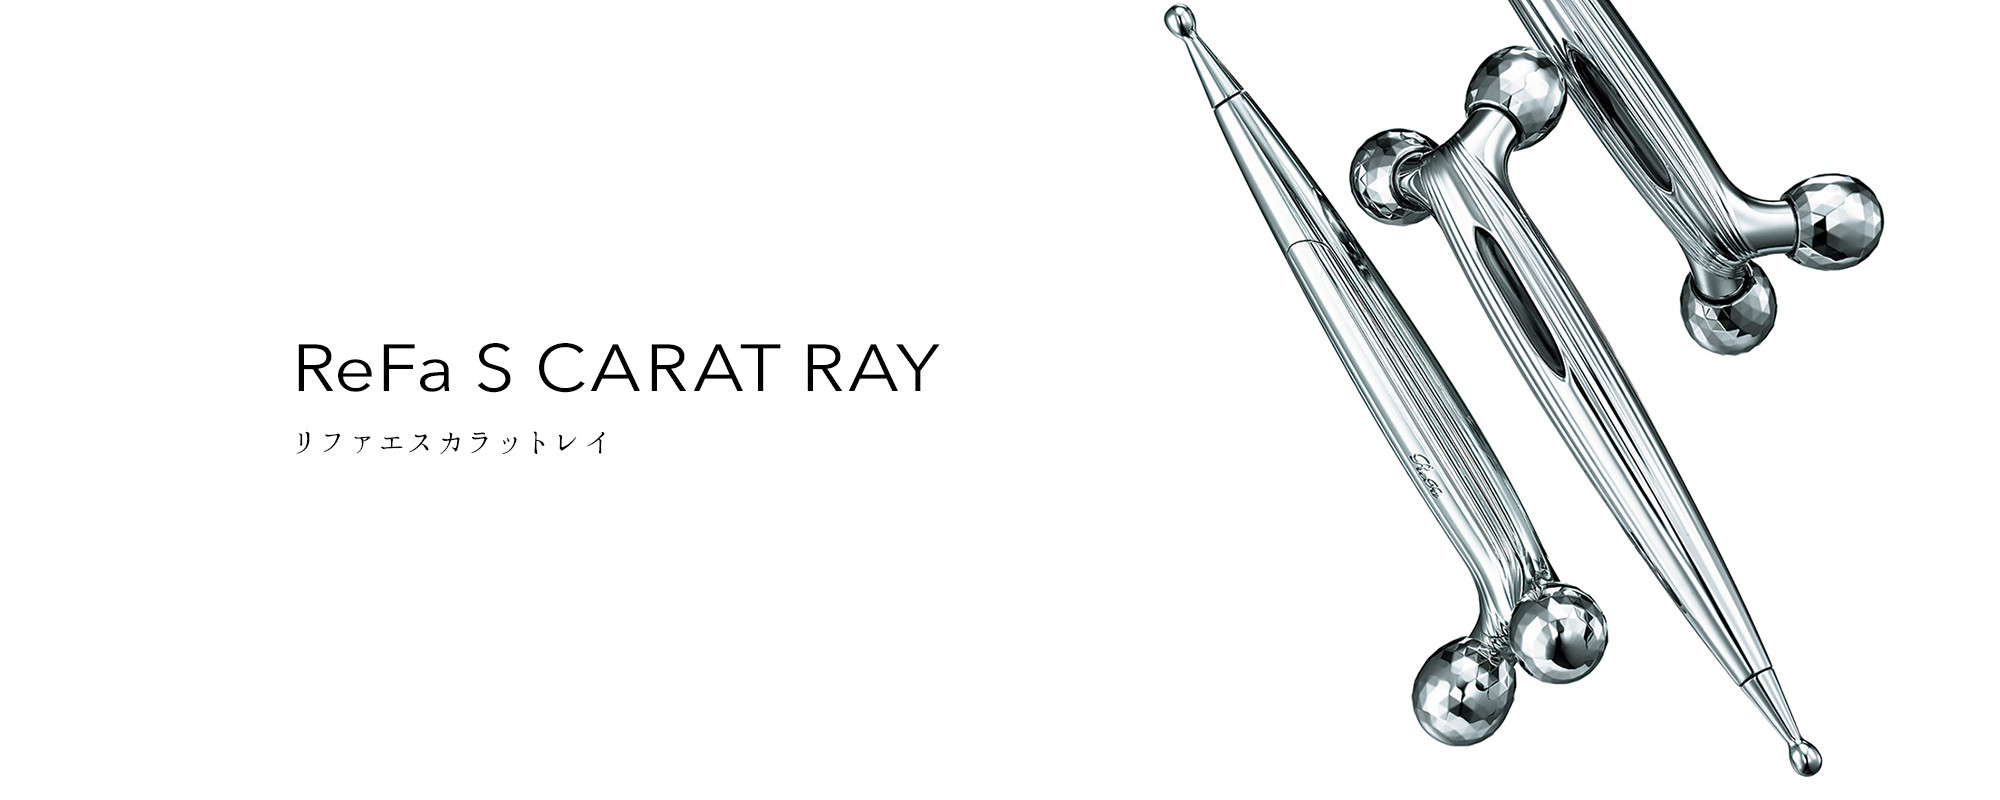 リファエスカラットレイ - ReFa S CARAT RAY | 商品情報 | ReFa ...